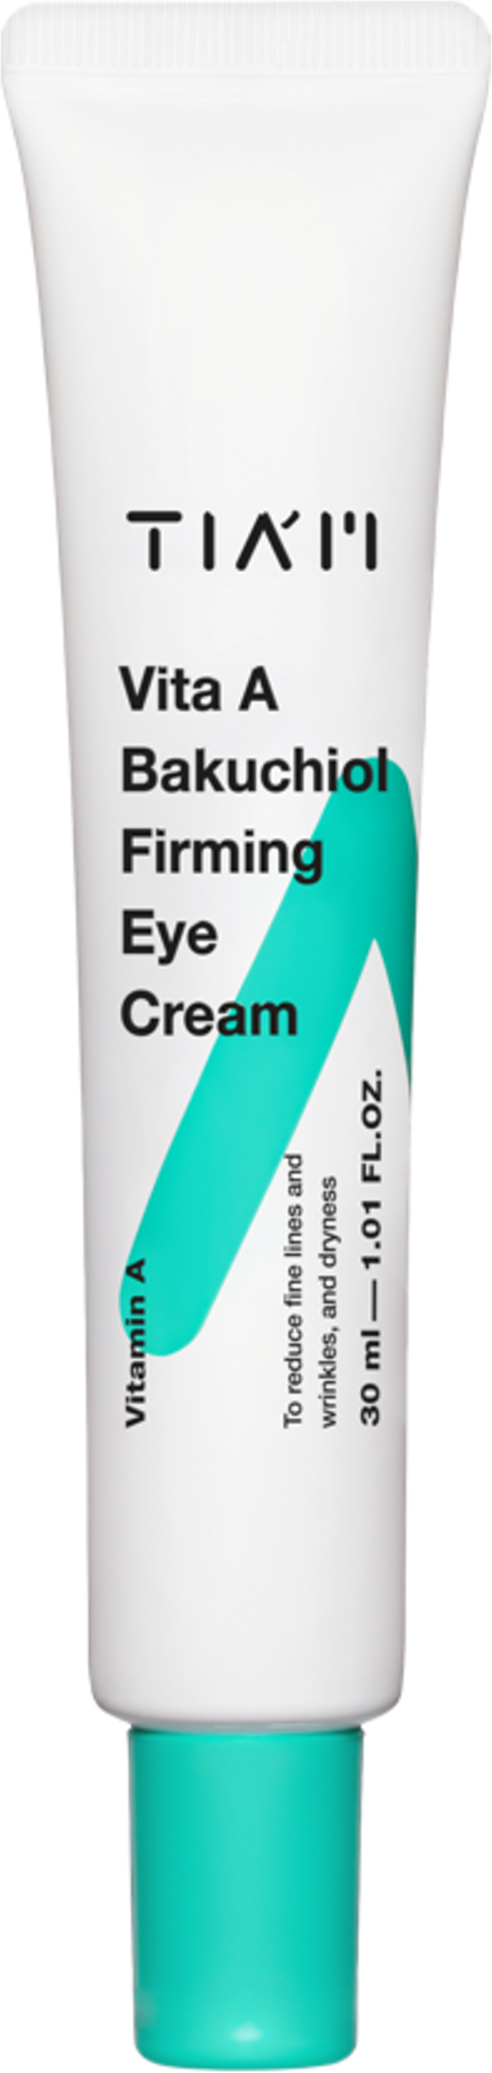 TIAM Крем для век с бакучиолом - Vita A Bakuchiol Firming Eye Cream, 30мл